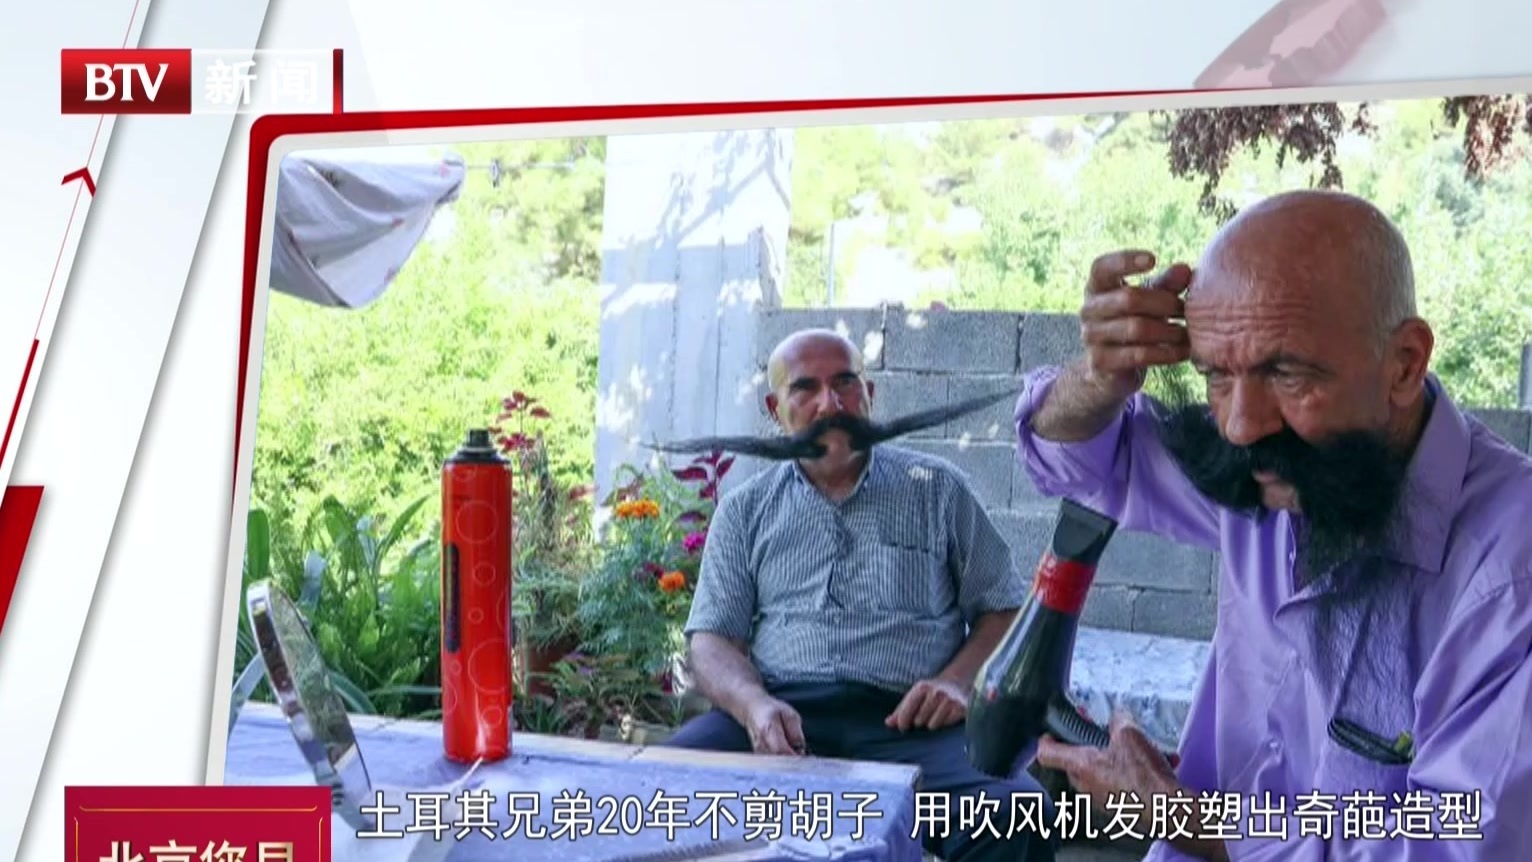 土耳其兄弟20年不剪胡子  用吹风机发胶塑出奇葩造型